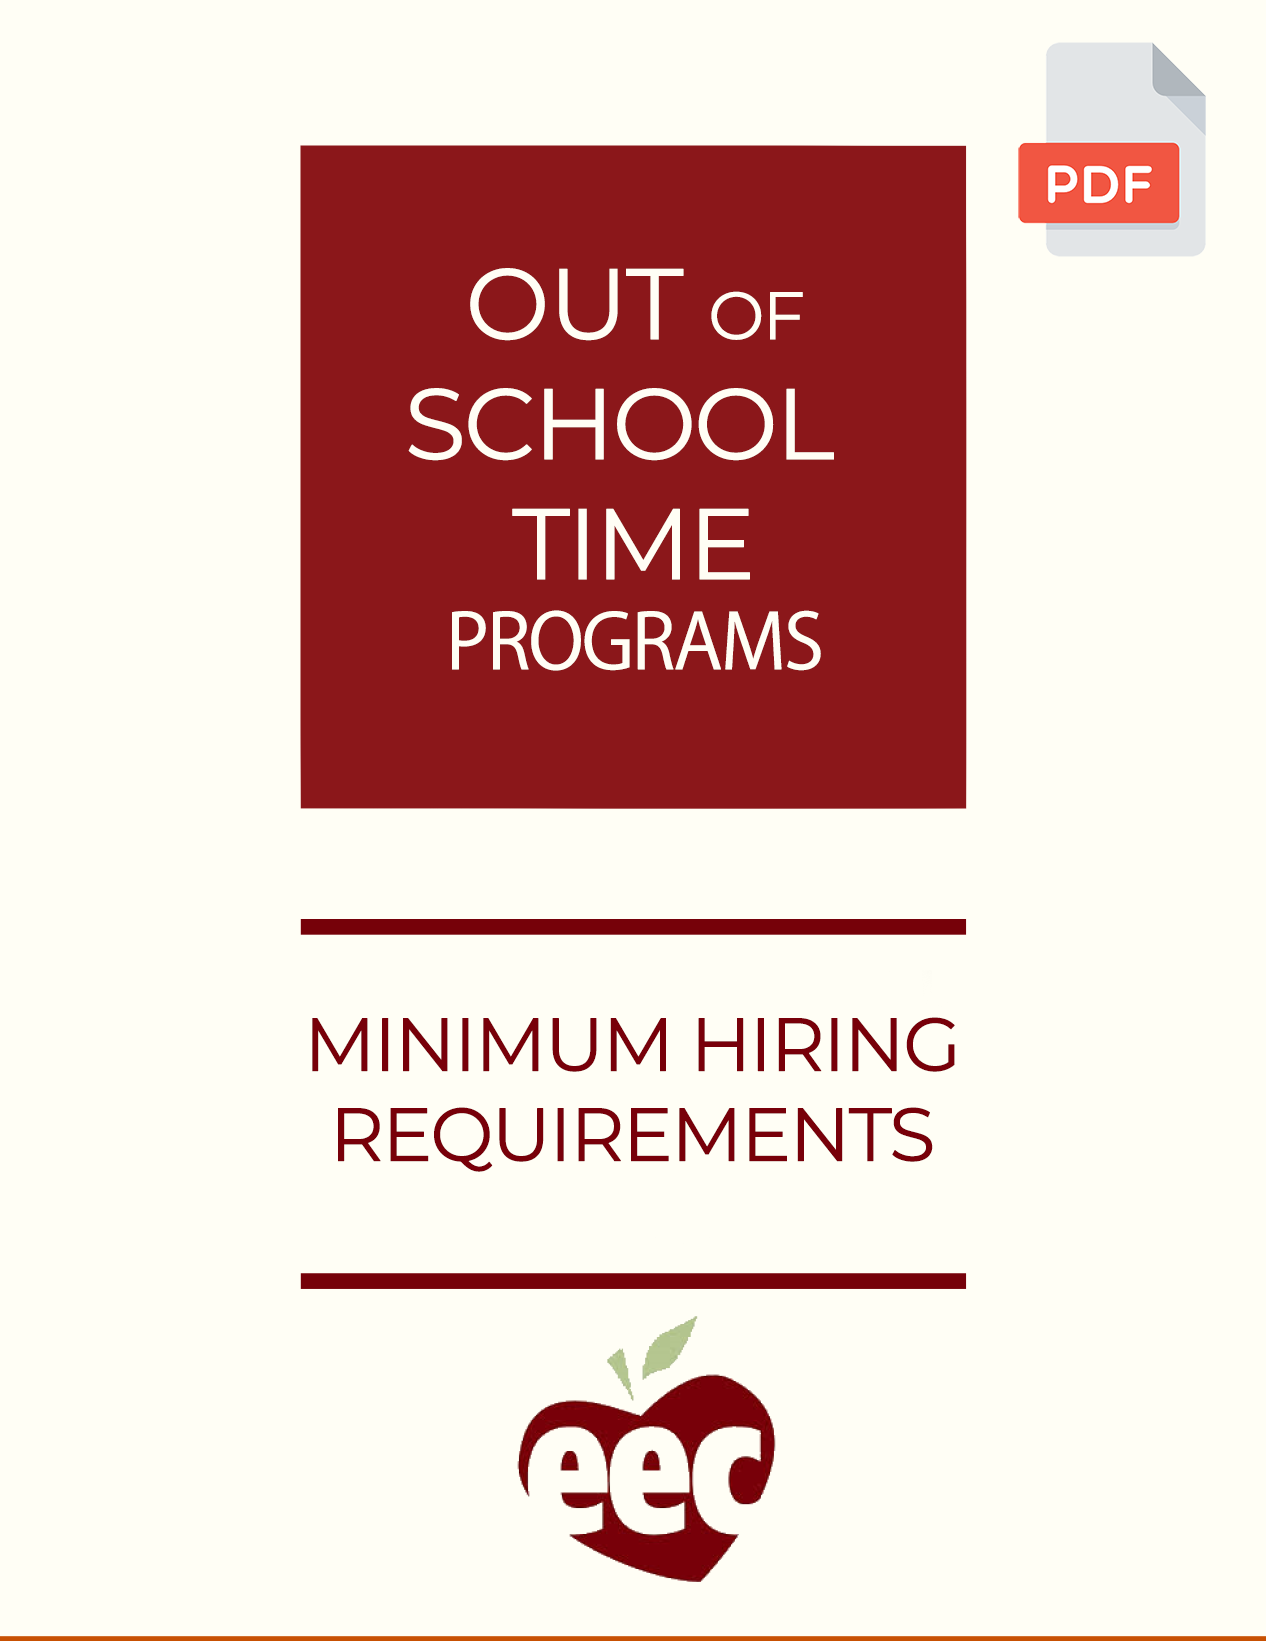 Clique para abrir a Lista de verificação de requisitos mínimos de contratação de programas fora do horário escolar